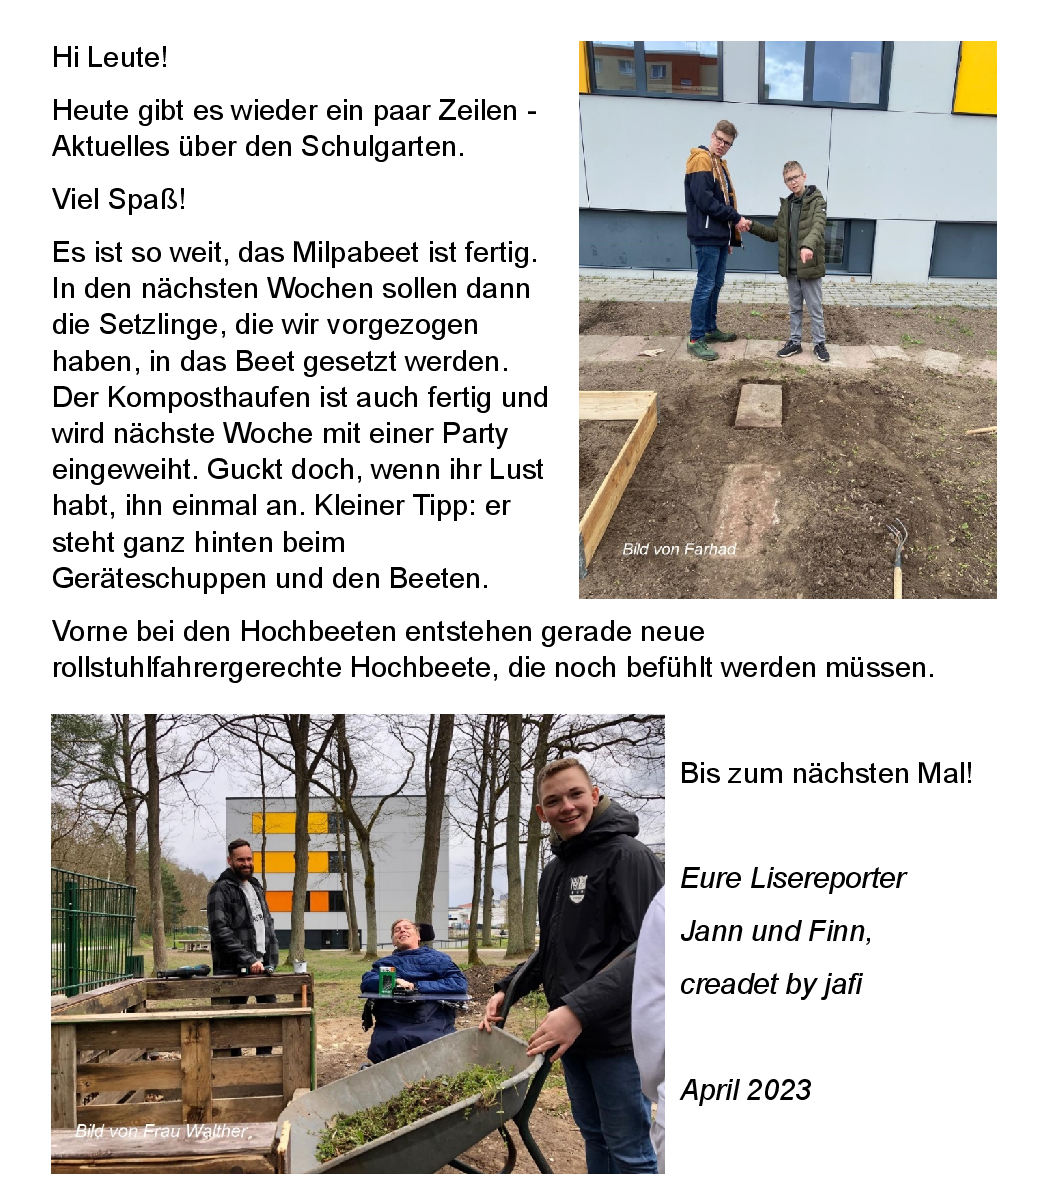 Schulgarten_Milpabeet_Kompost_fertig.png